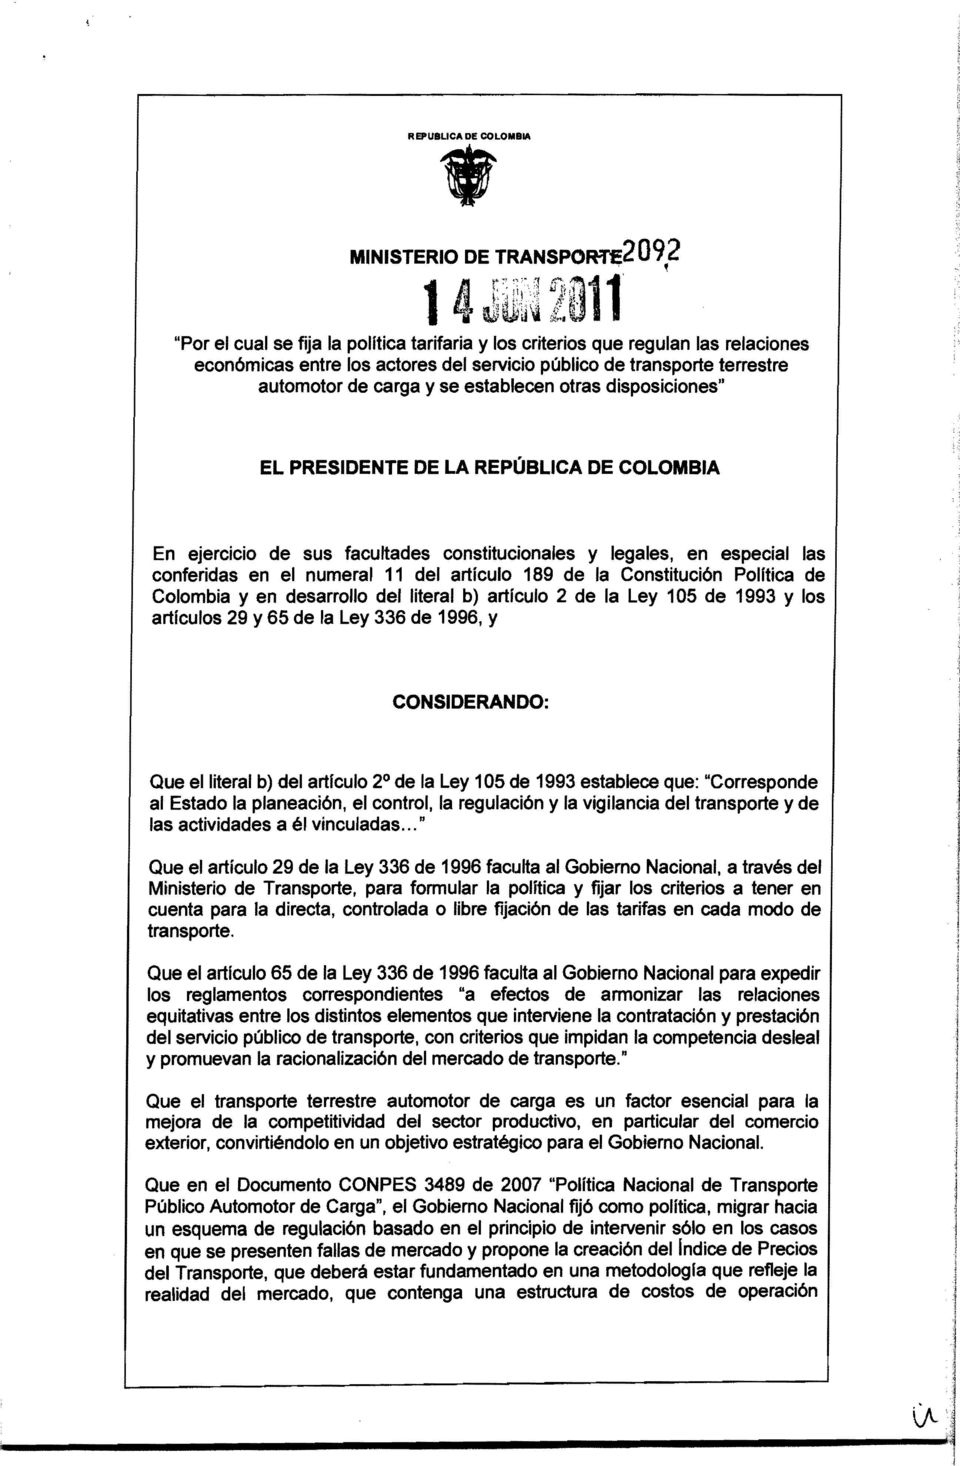 numeral 11 del artículo 189 de la Constitución Polftica de Colombia y en desarrollo del literal b) articulo 2 de la Ley 105 de 1993 y los artículos 29 y 65 de la Ley 336 de 1996, y CONSIDERANDO: Que